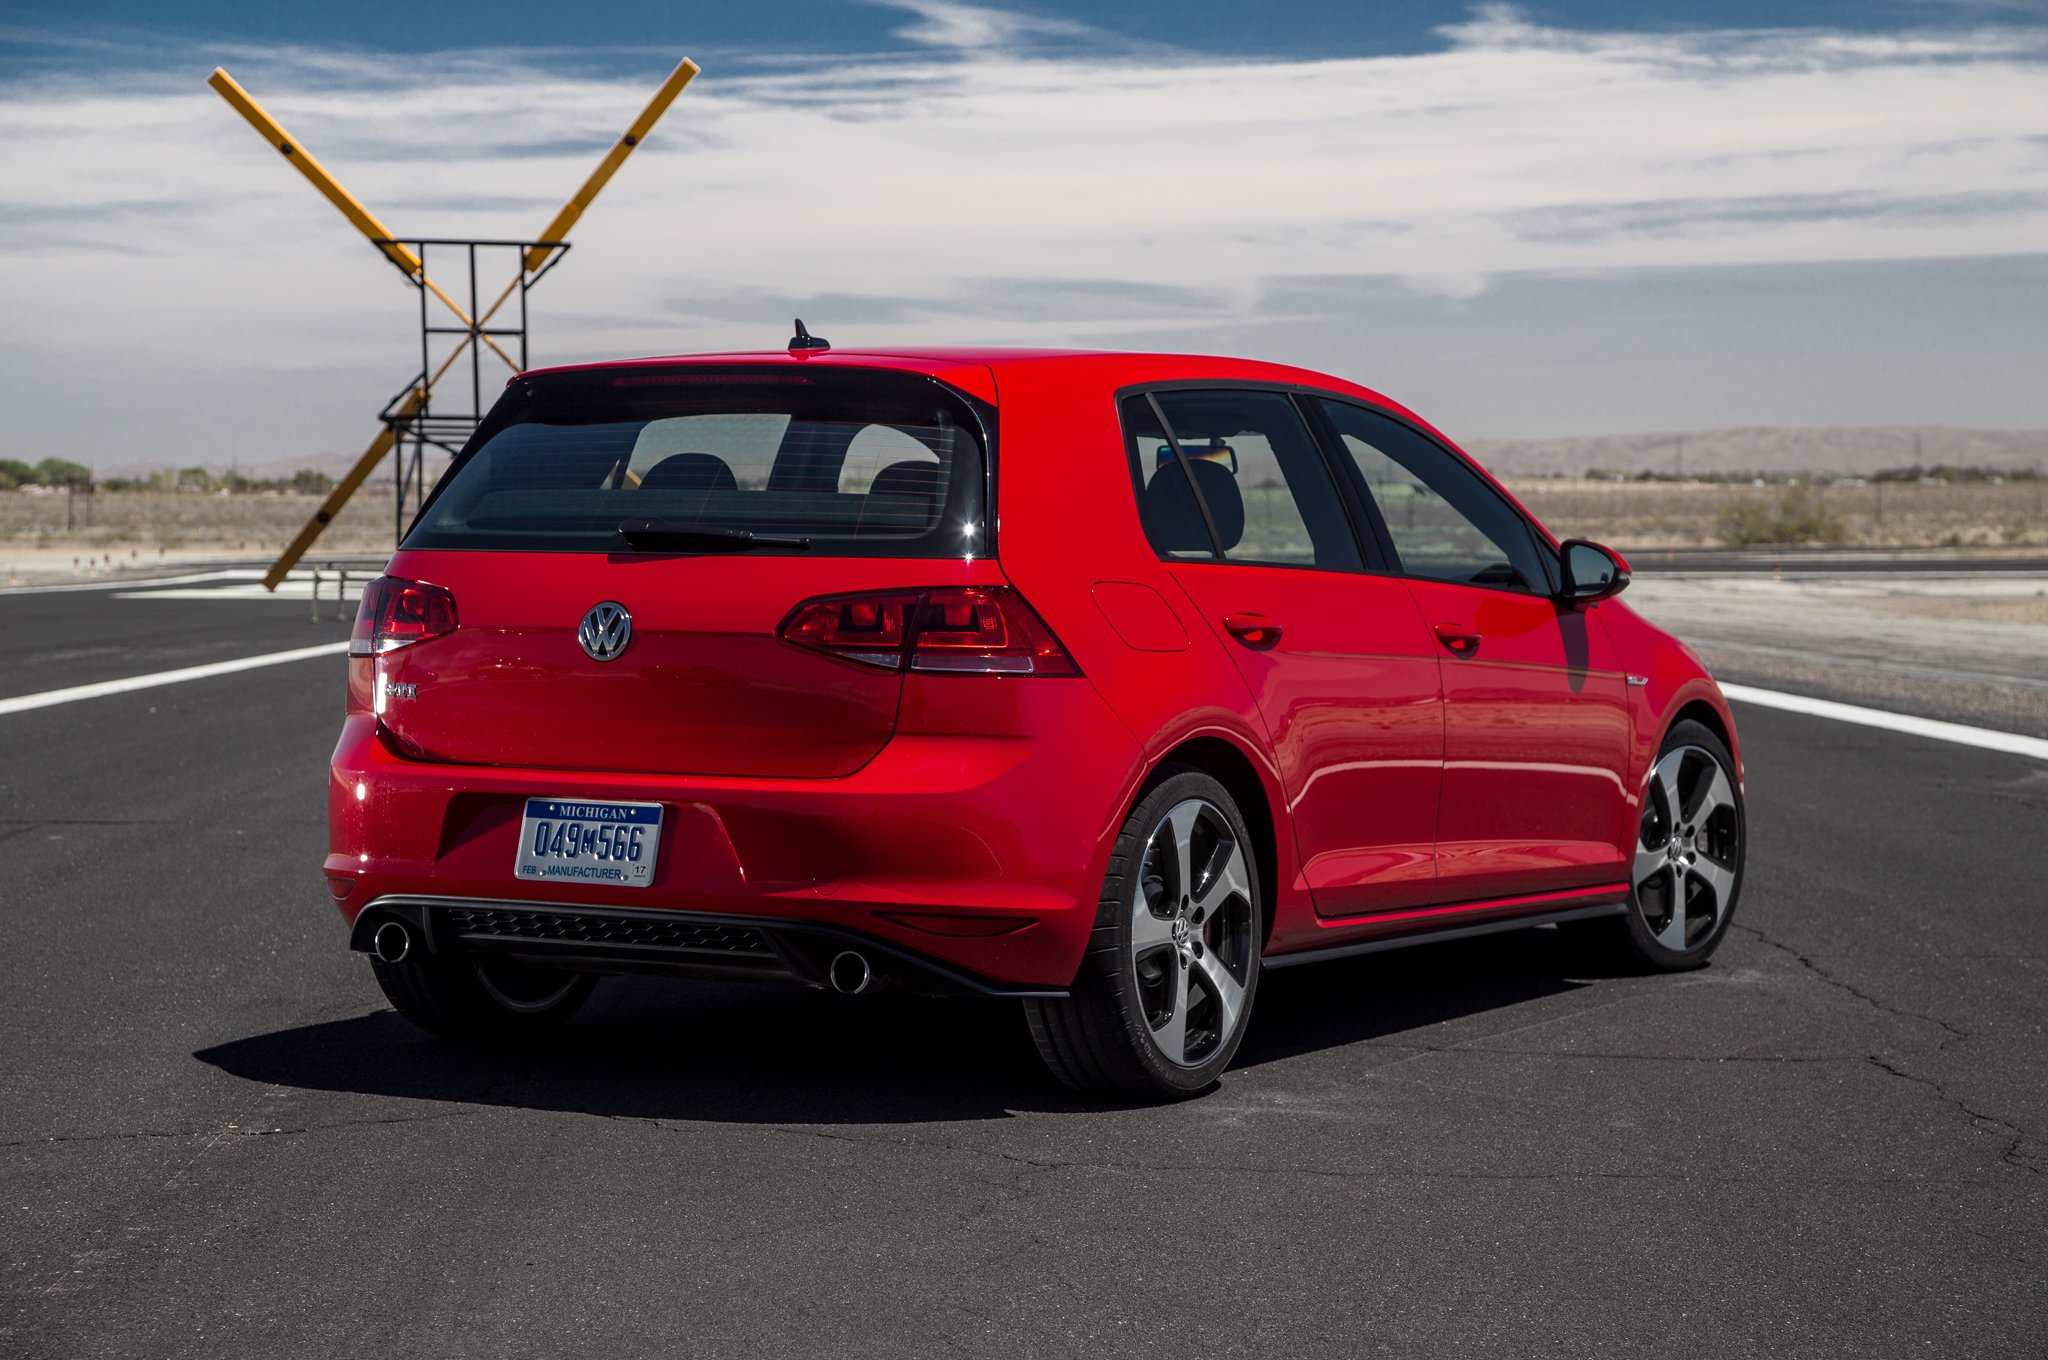 2015 Volkswagen GTI Best Quality Wallpapers